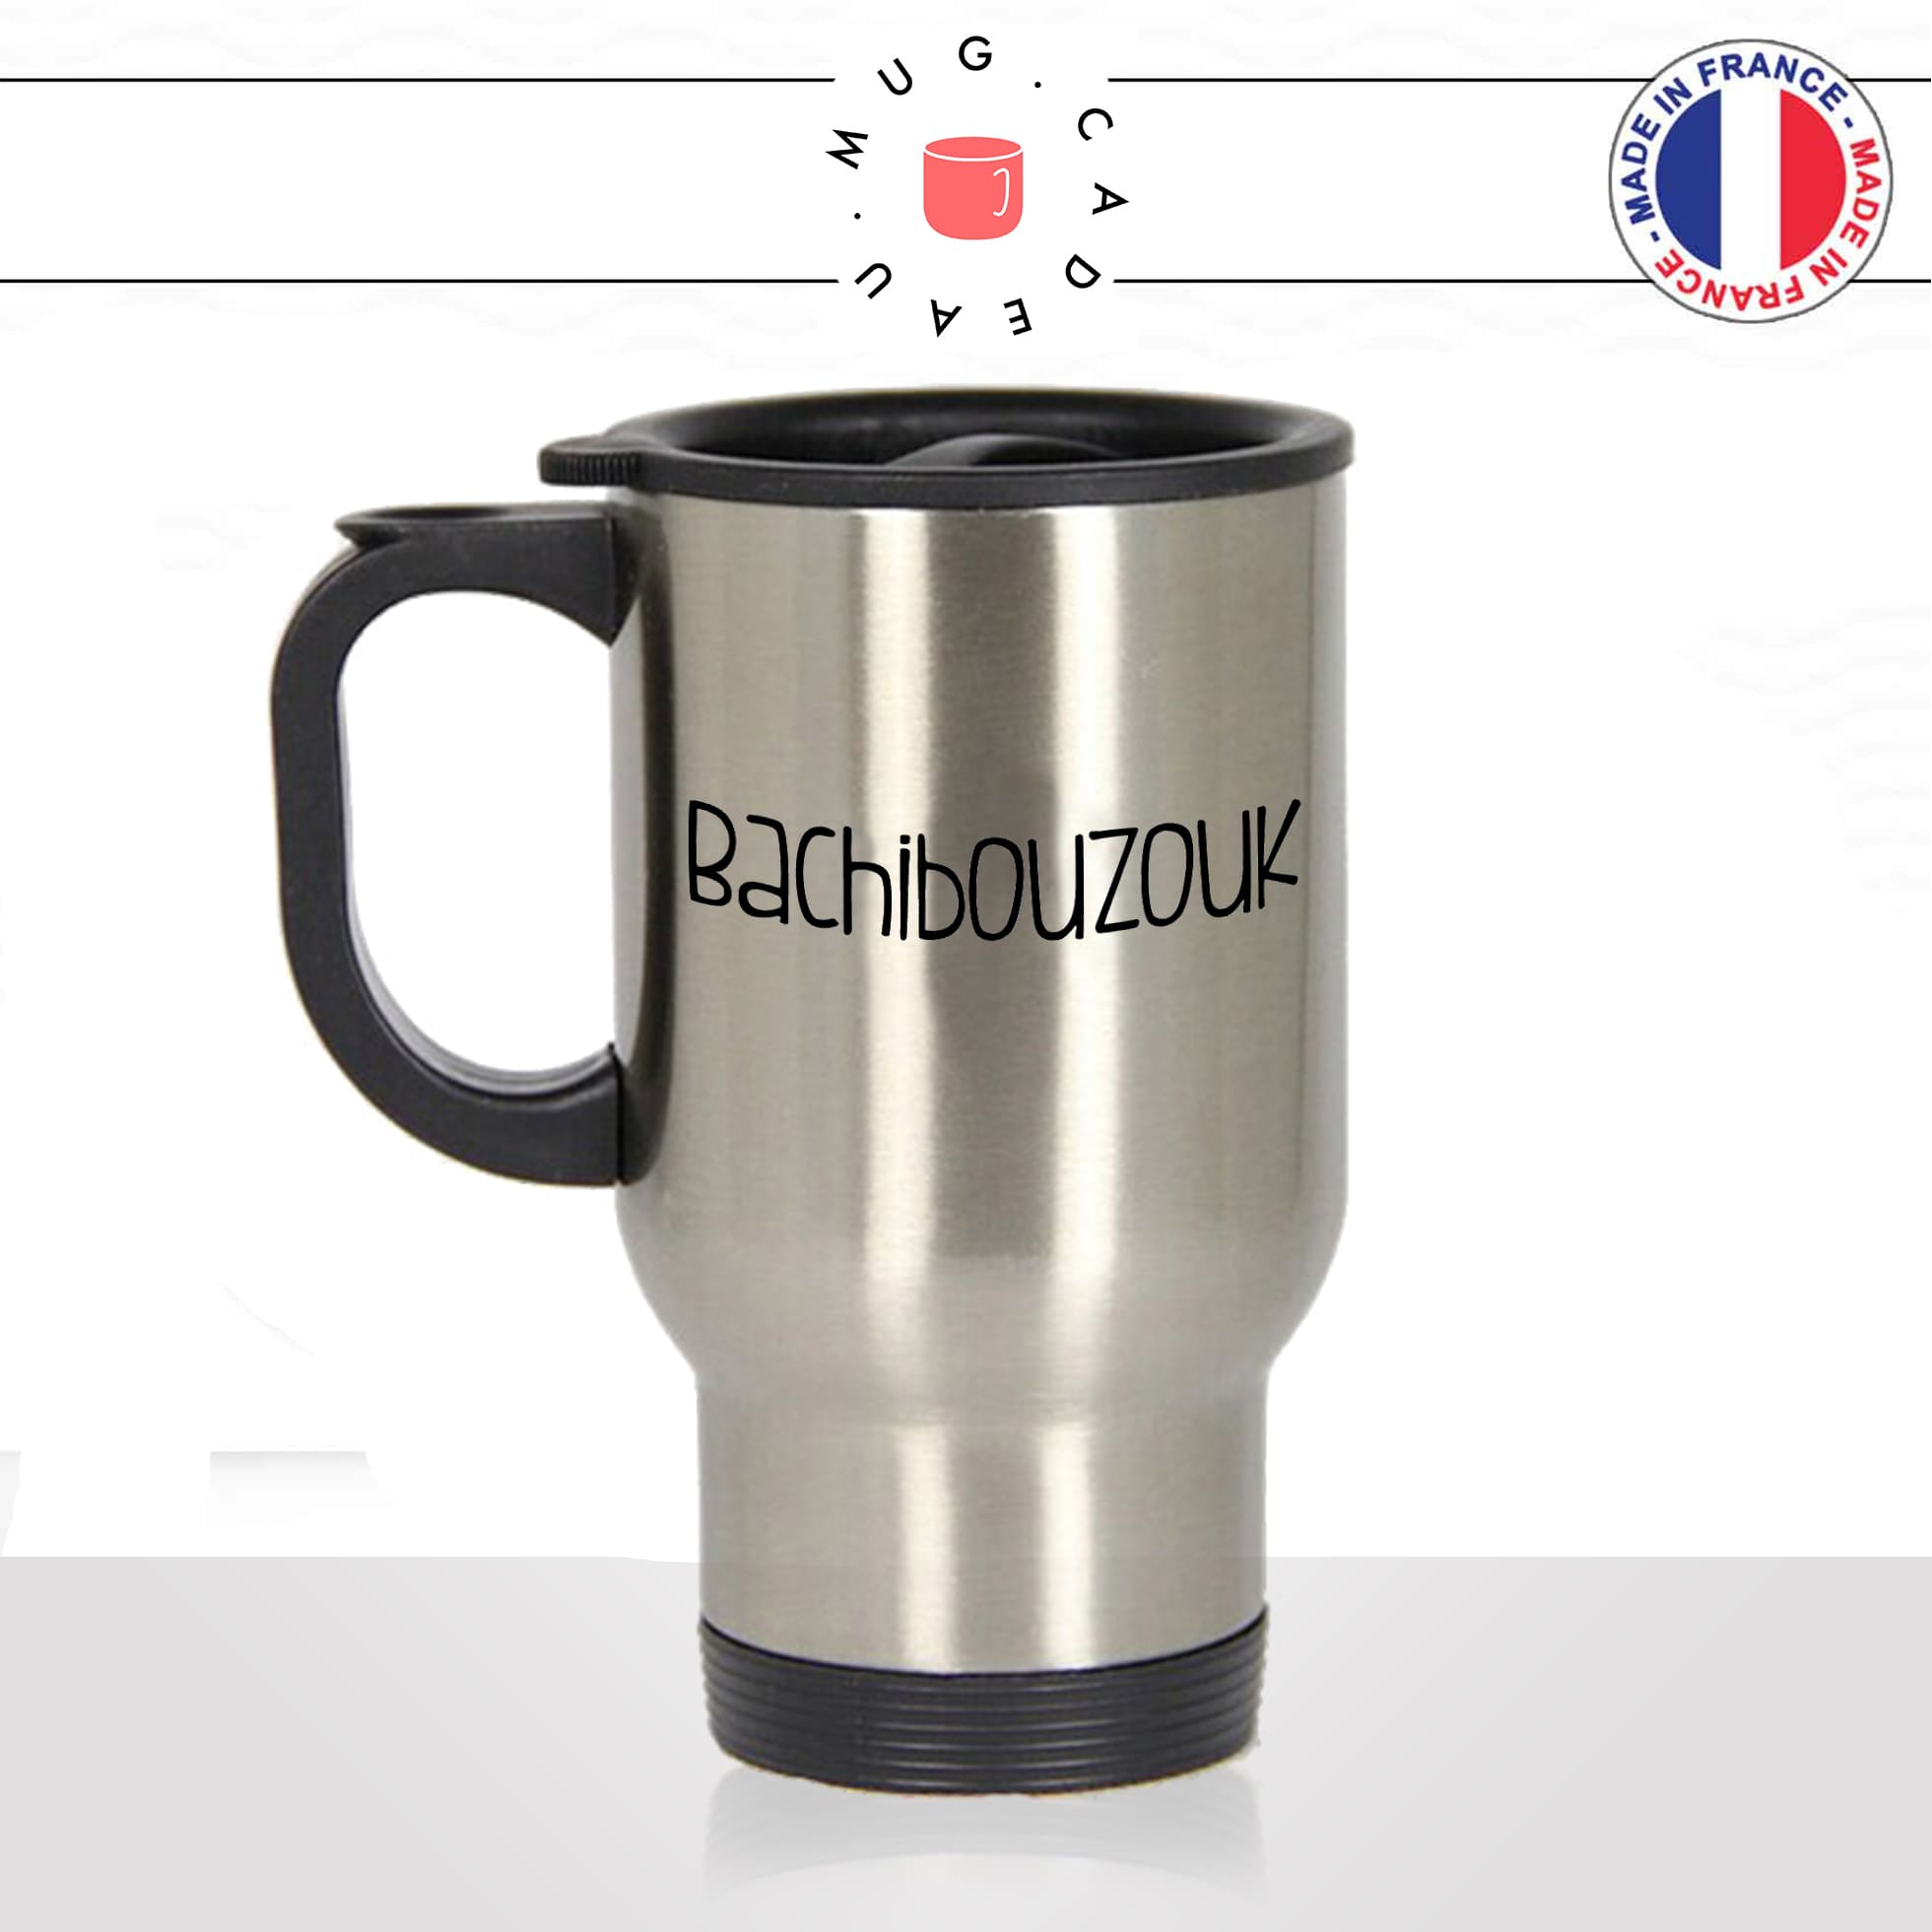 mug-tasse-thermos-isotherme-unique-bachibouzouk-tintin-capitaine-hadock-homme-femme-humour-fun-cool-idée-cadeau-original-personnalisé